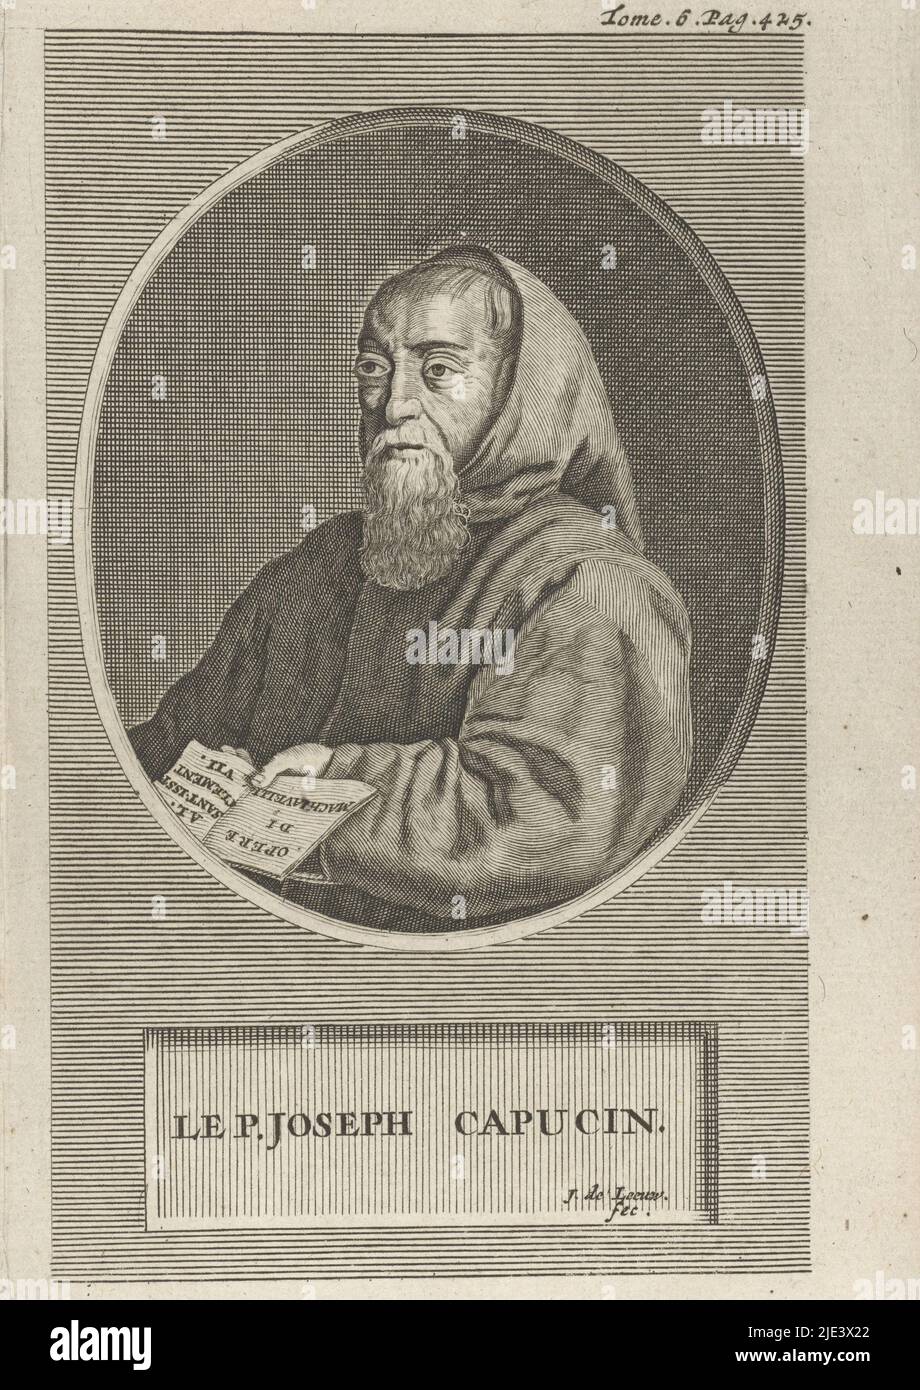 Retrato de François Leclerc du Tremblay, Jan de Leeuw, 1704, Retrato busto en óvalo a la izquierda del monje francés François Leclerc du Tremblay, revestido en una pipa. Debajo del retrato, una placa enumera el nombre de la persona retratada. Imprimir numerado arriba a la derecha: Tomo. 6. Pág. 425., imprenta: Jan de Leeuw, (mencionado en el objeto), 1704, papel, grabado, alt. 157 mm x anch. 97 mm Foto de stock